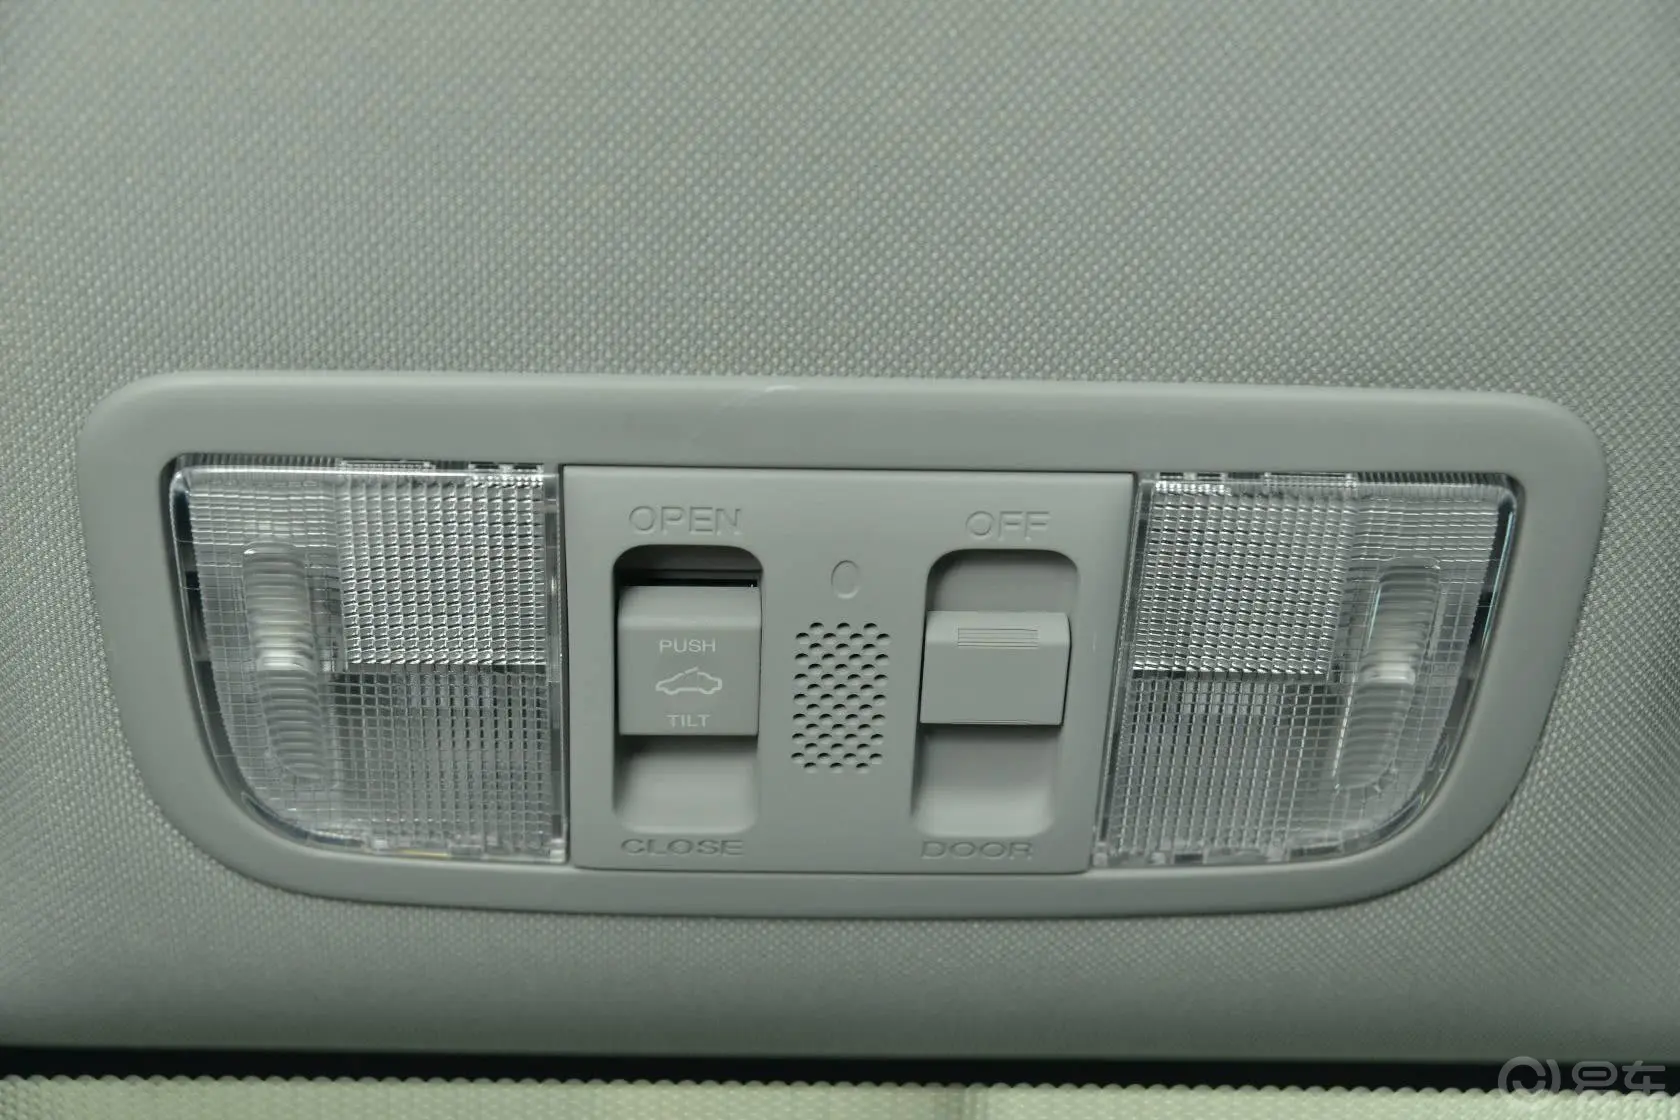 思域1.8L 自动 EXi舒适版前排车顶中央控制区